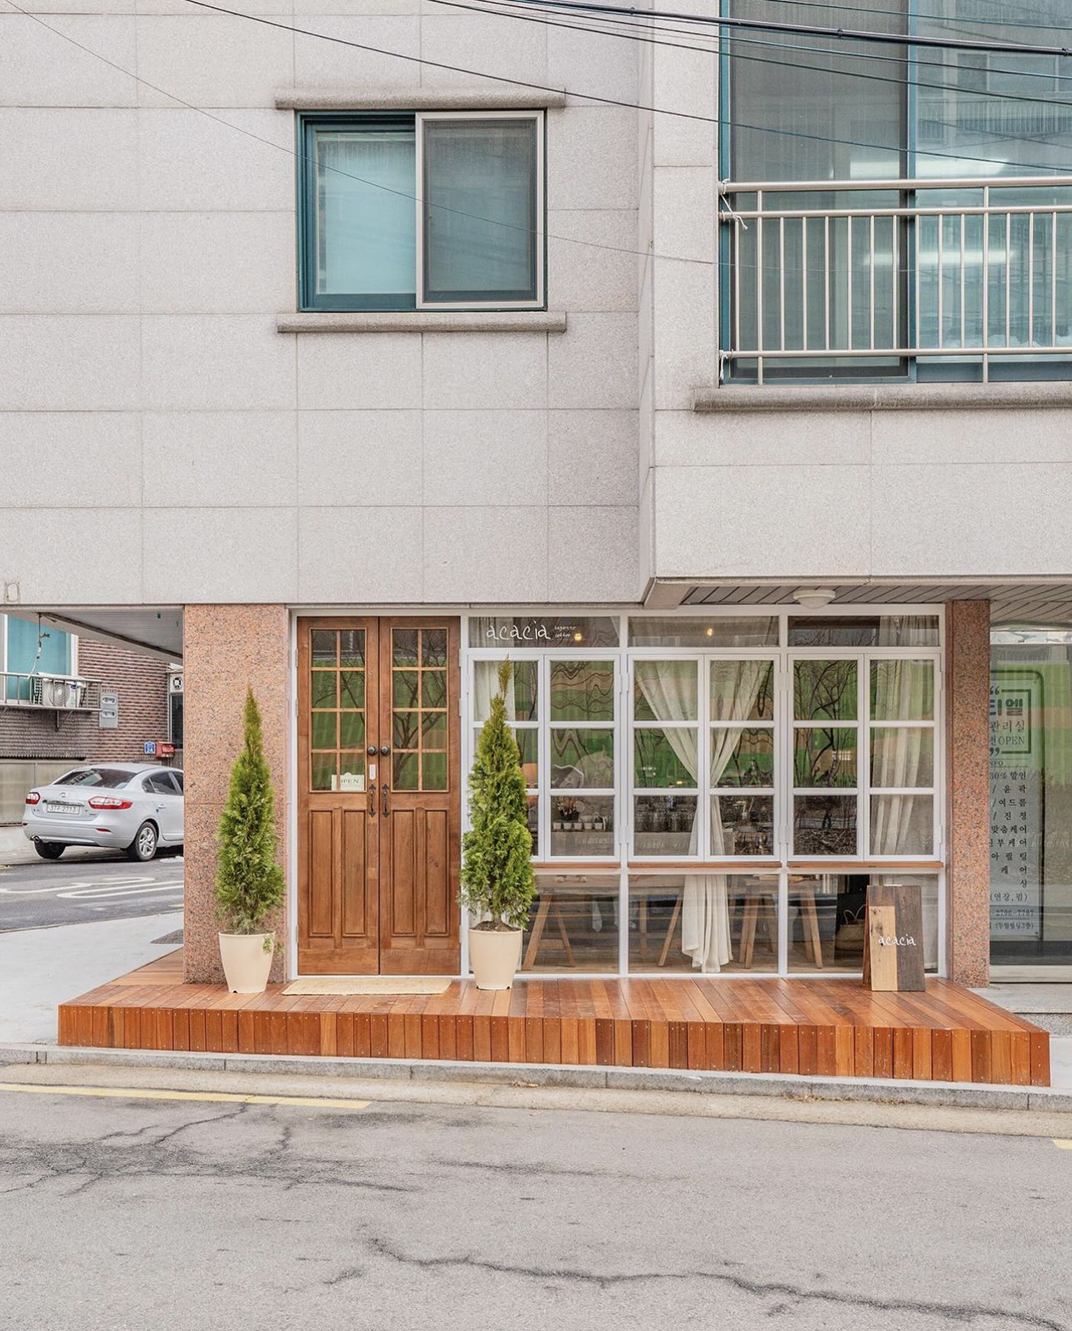 复古感觉的咖啡馆 韩国 珠海 东莞 上海 北京 广州 武汉 咖啡店 餐饮商业 logo设计 vi设计 空间设计